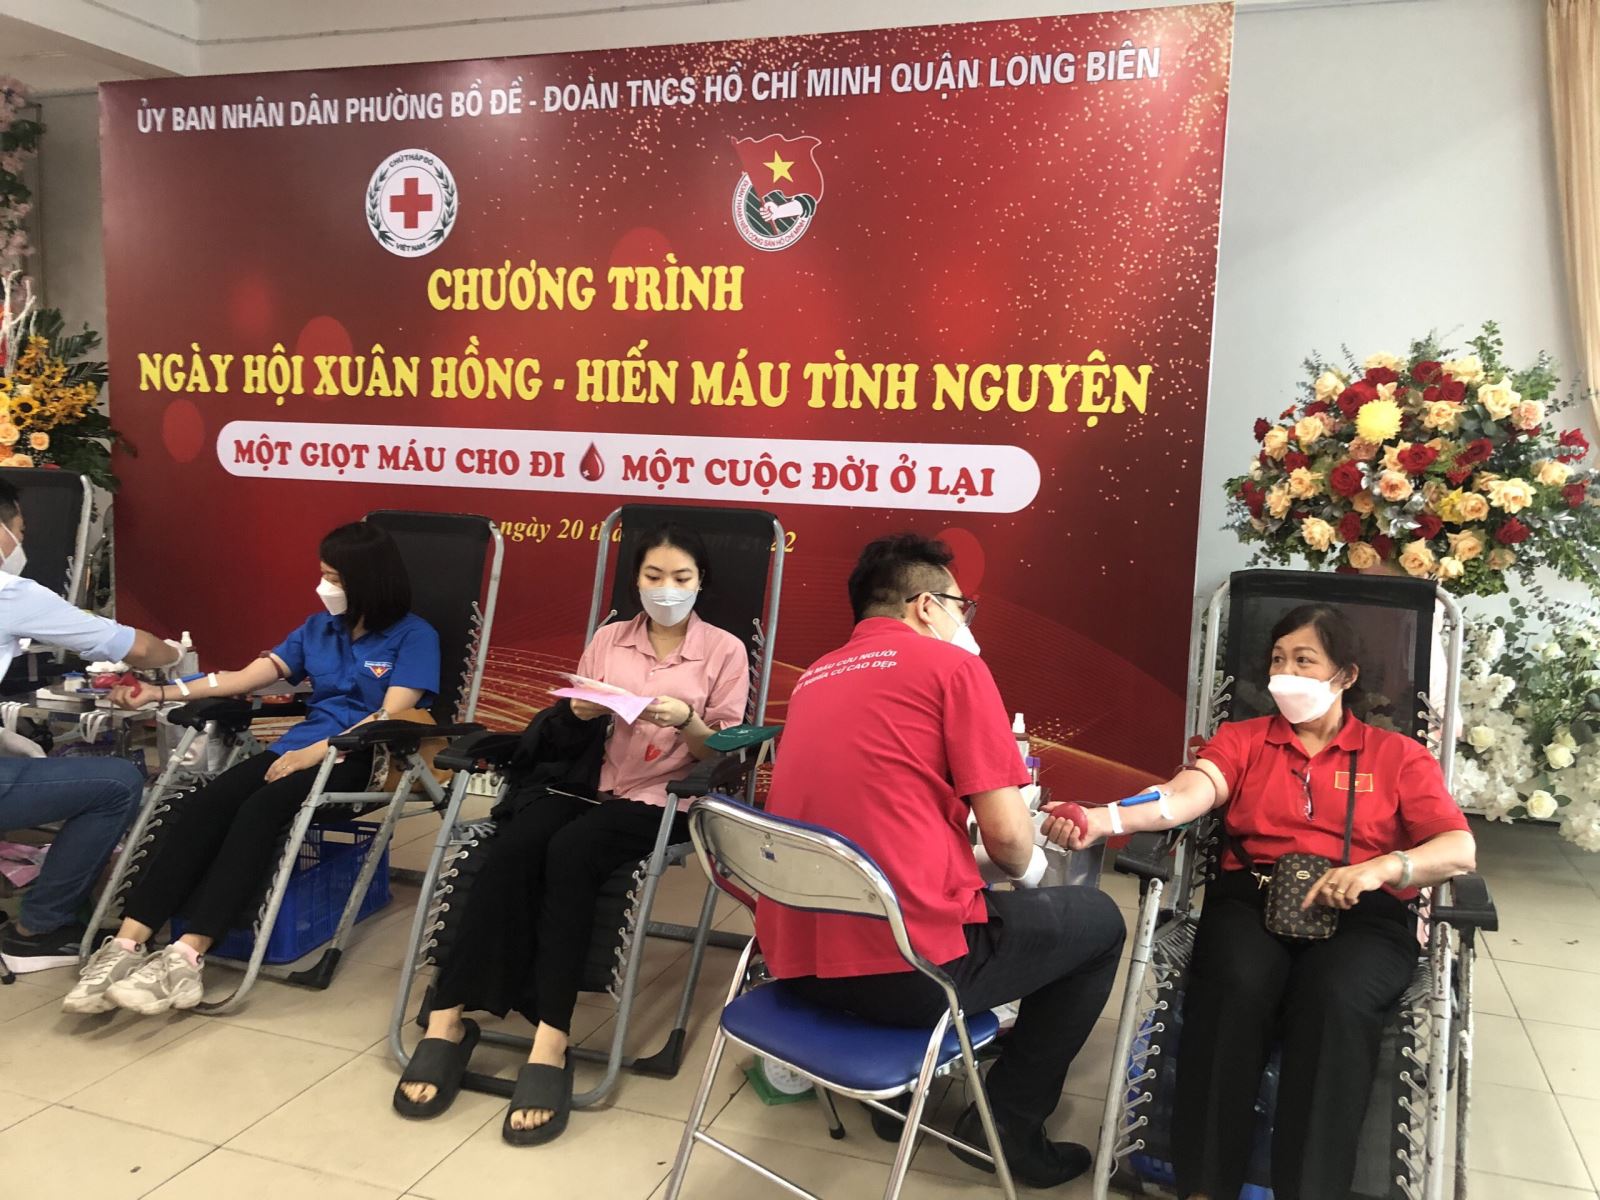 GV Nguyễn Thị Hằng Nga tham gia hiến máu nhân đạo